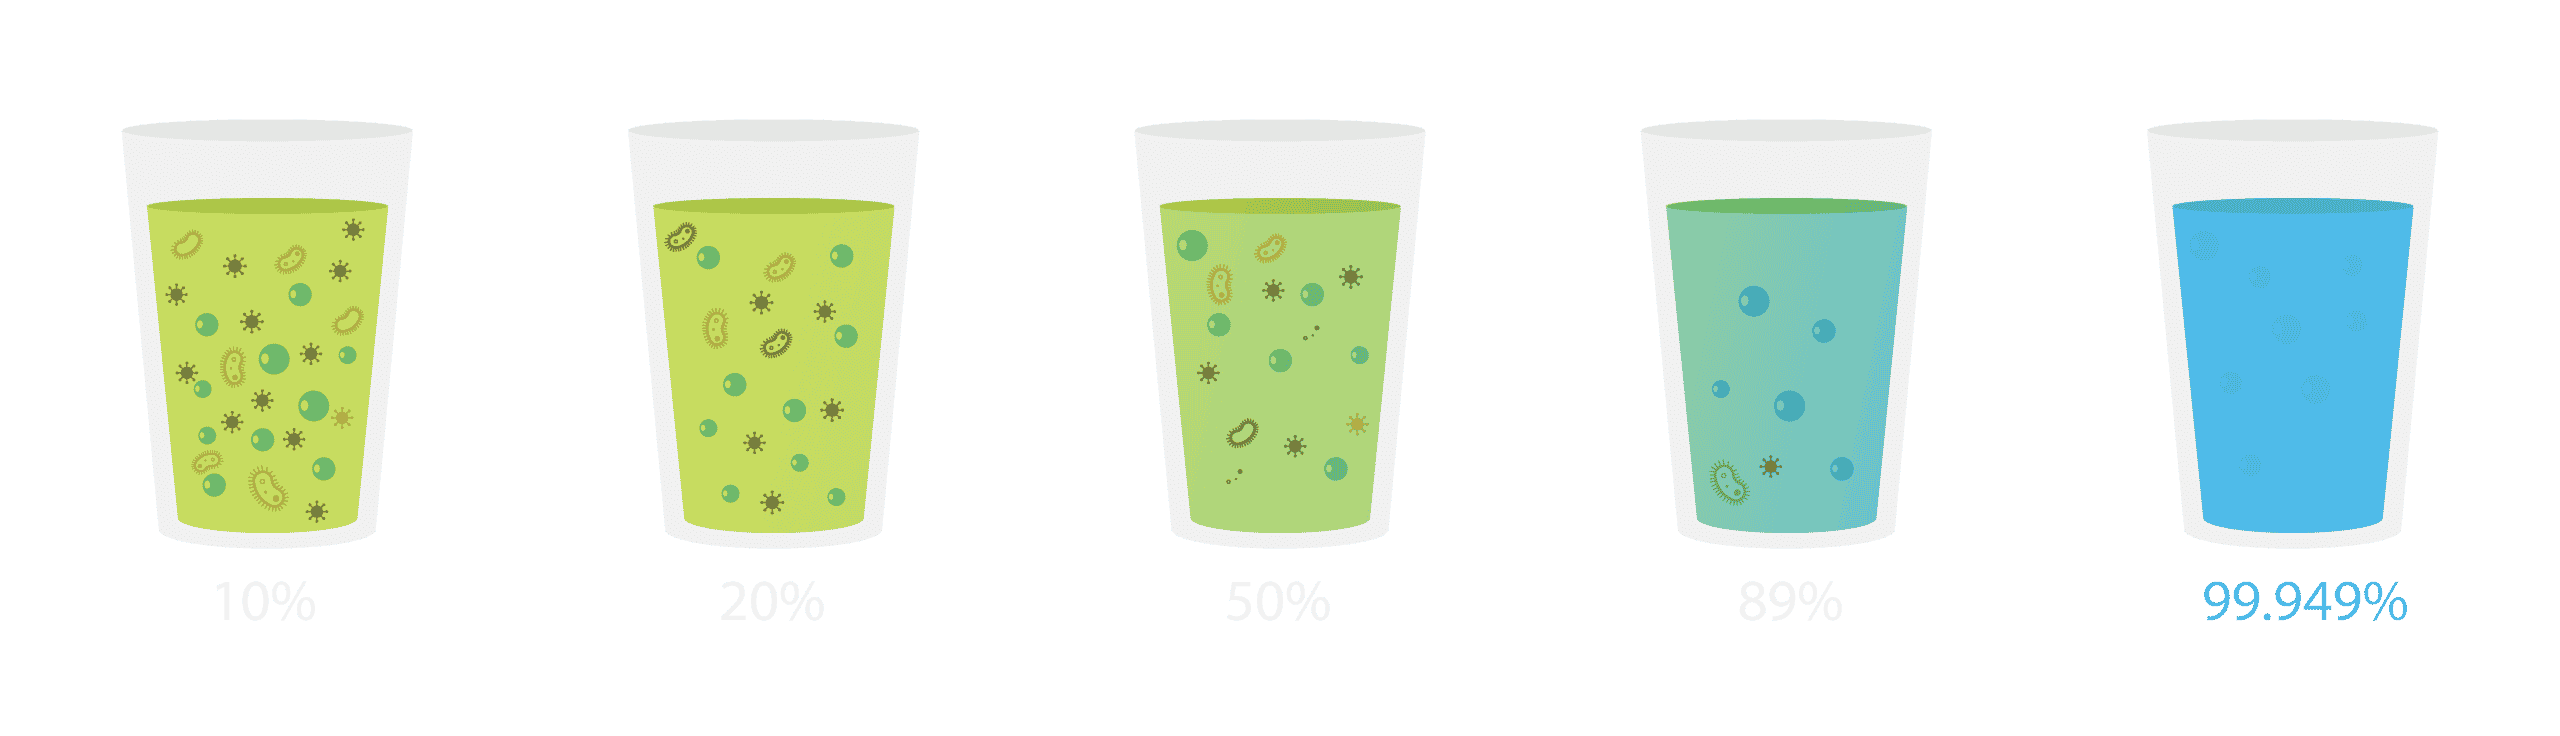 Différents niveau de filtration de l'eau, analogie avec l'air